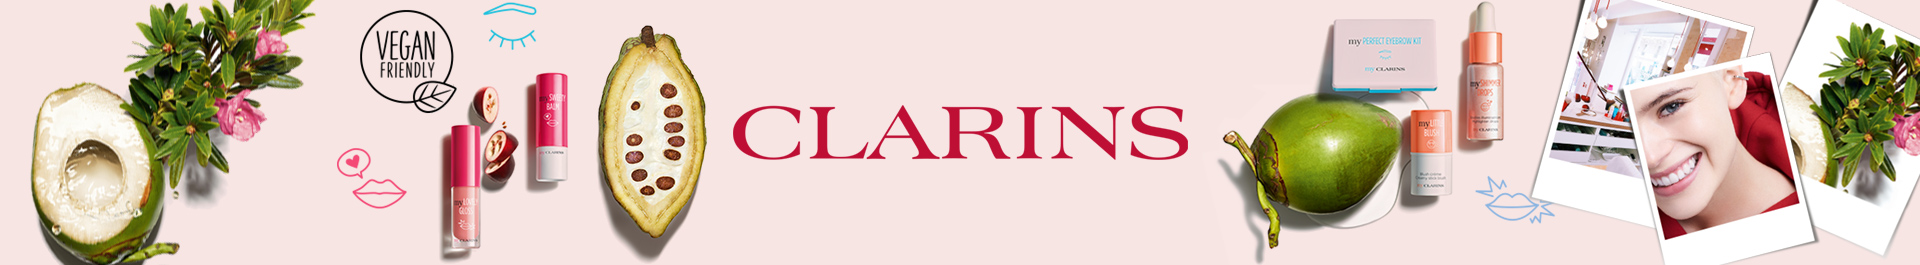 Clarins Banner